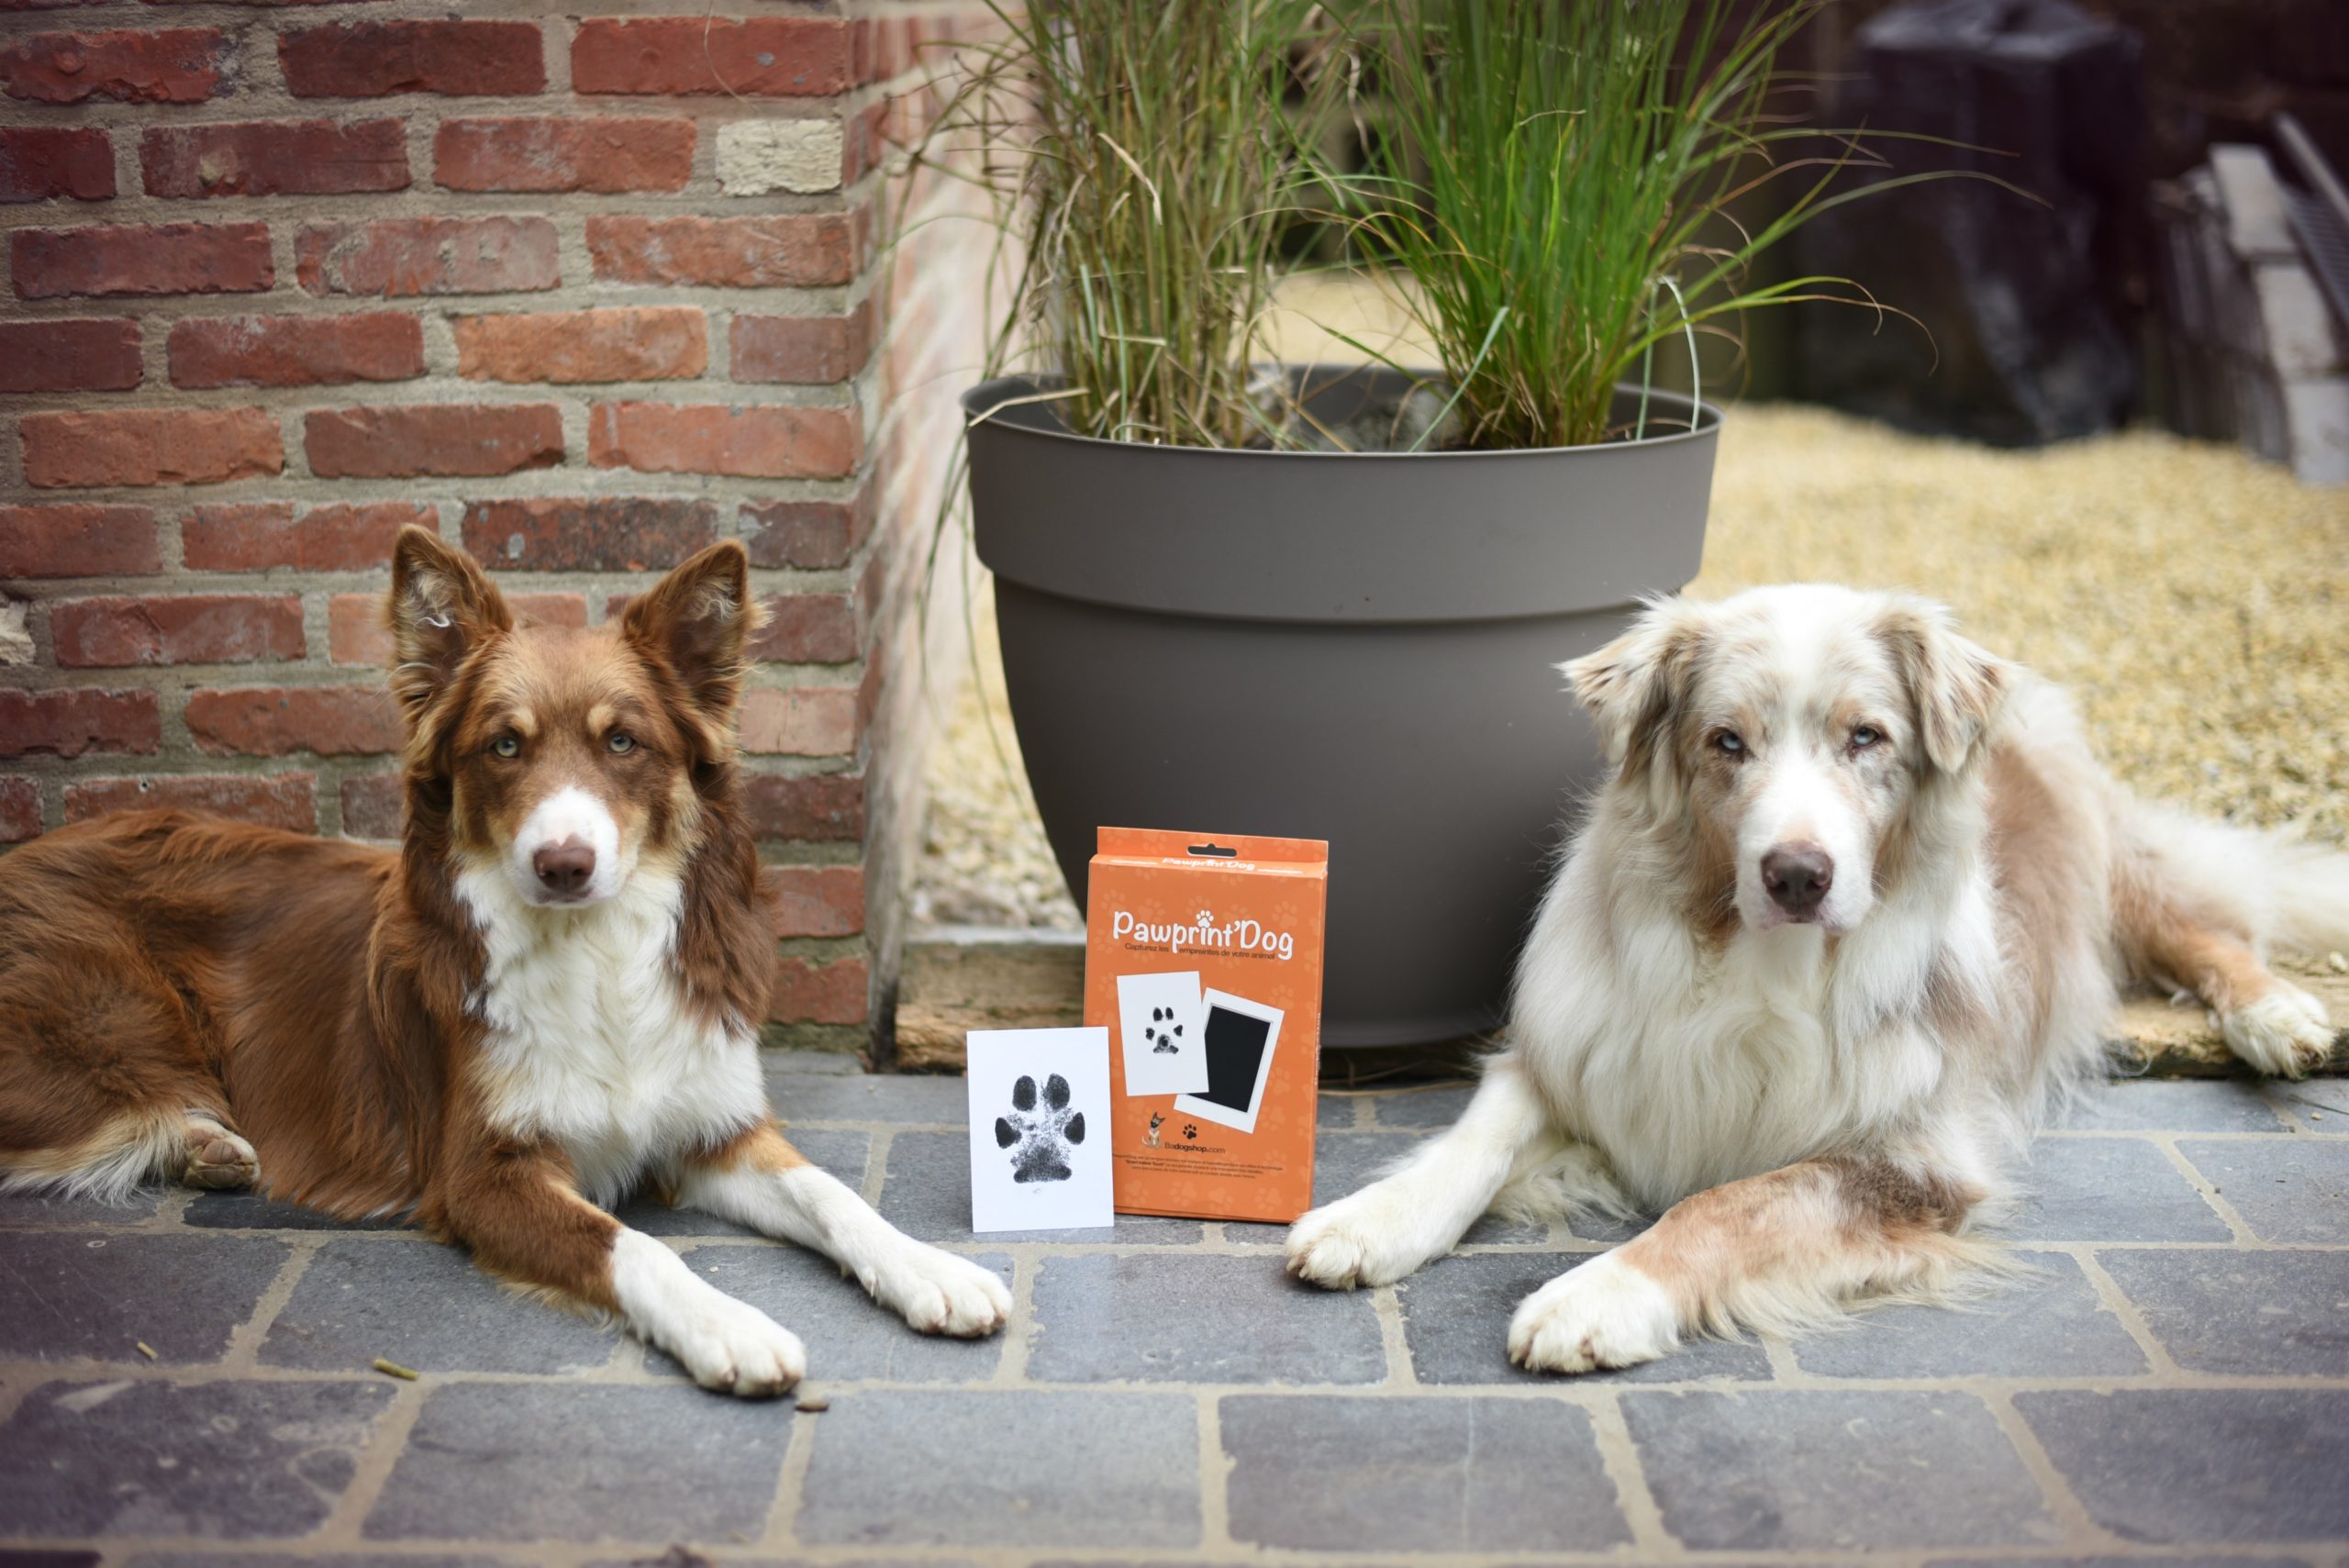 Pawprint'dog – Kit d'empreinte pour chiens – BADOGSHOP - CACHOU